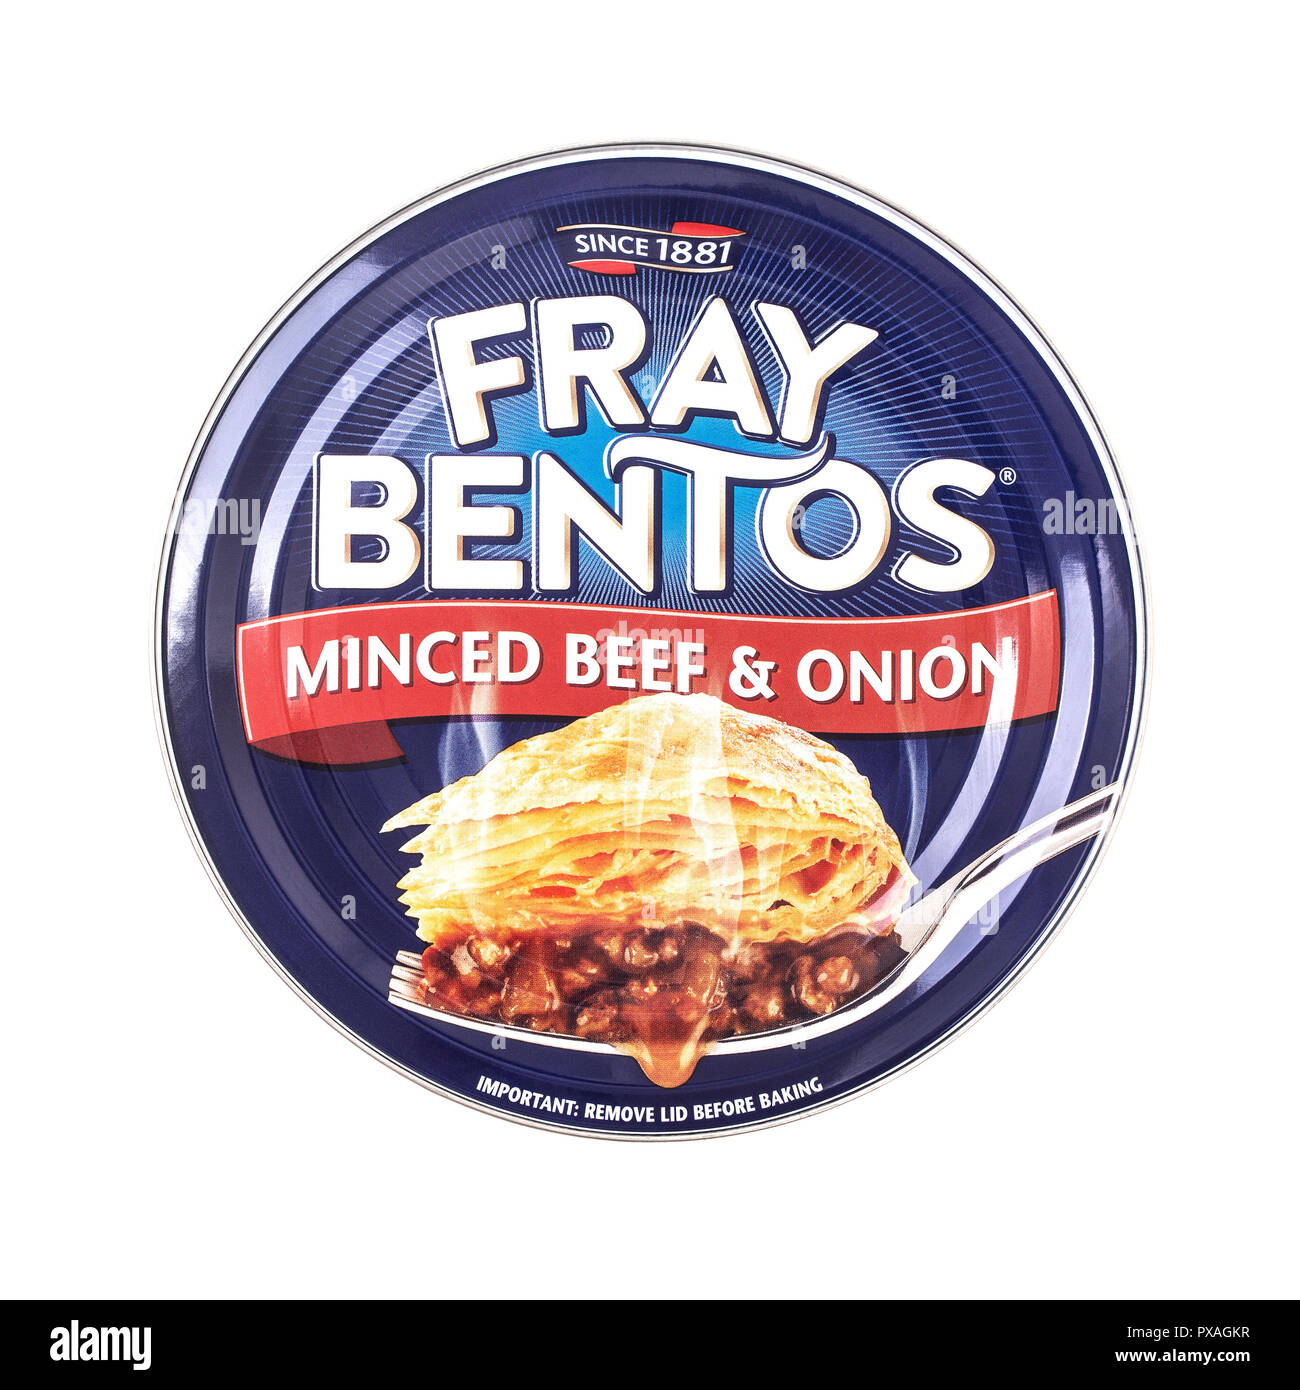 SWINDON, UK - 21. OKTOBER 2018: Fray Bentos gehacktes Rindfleisch und Zwiebeln Pie auf weißem Hintergrund Stockfoto